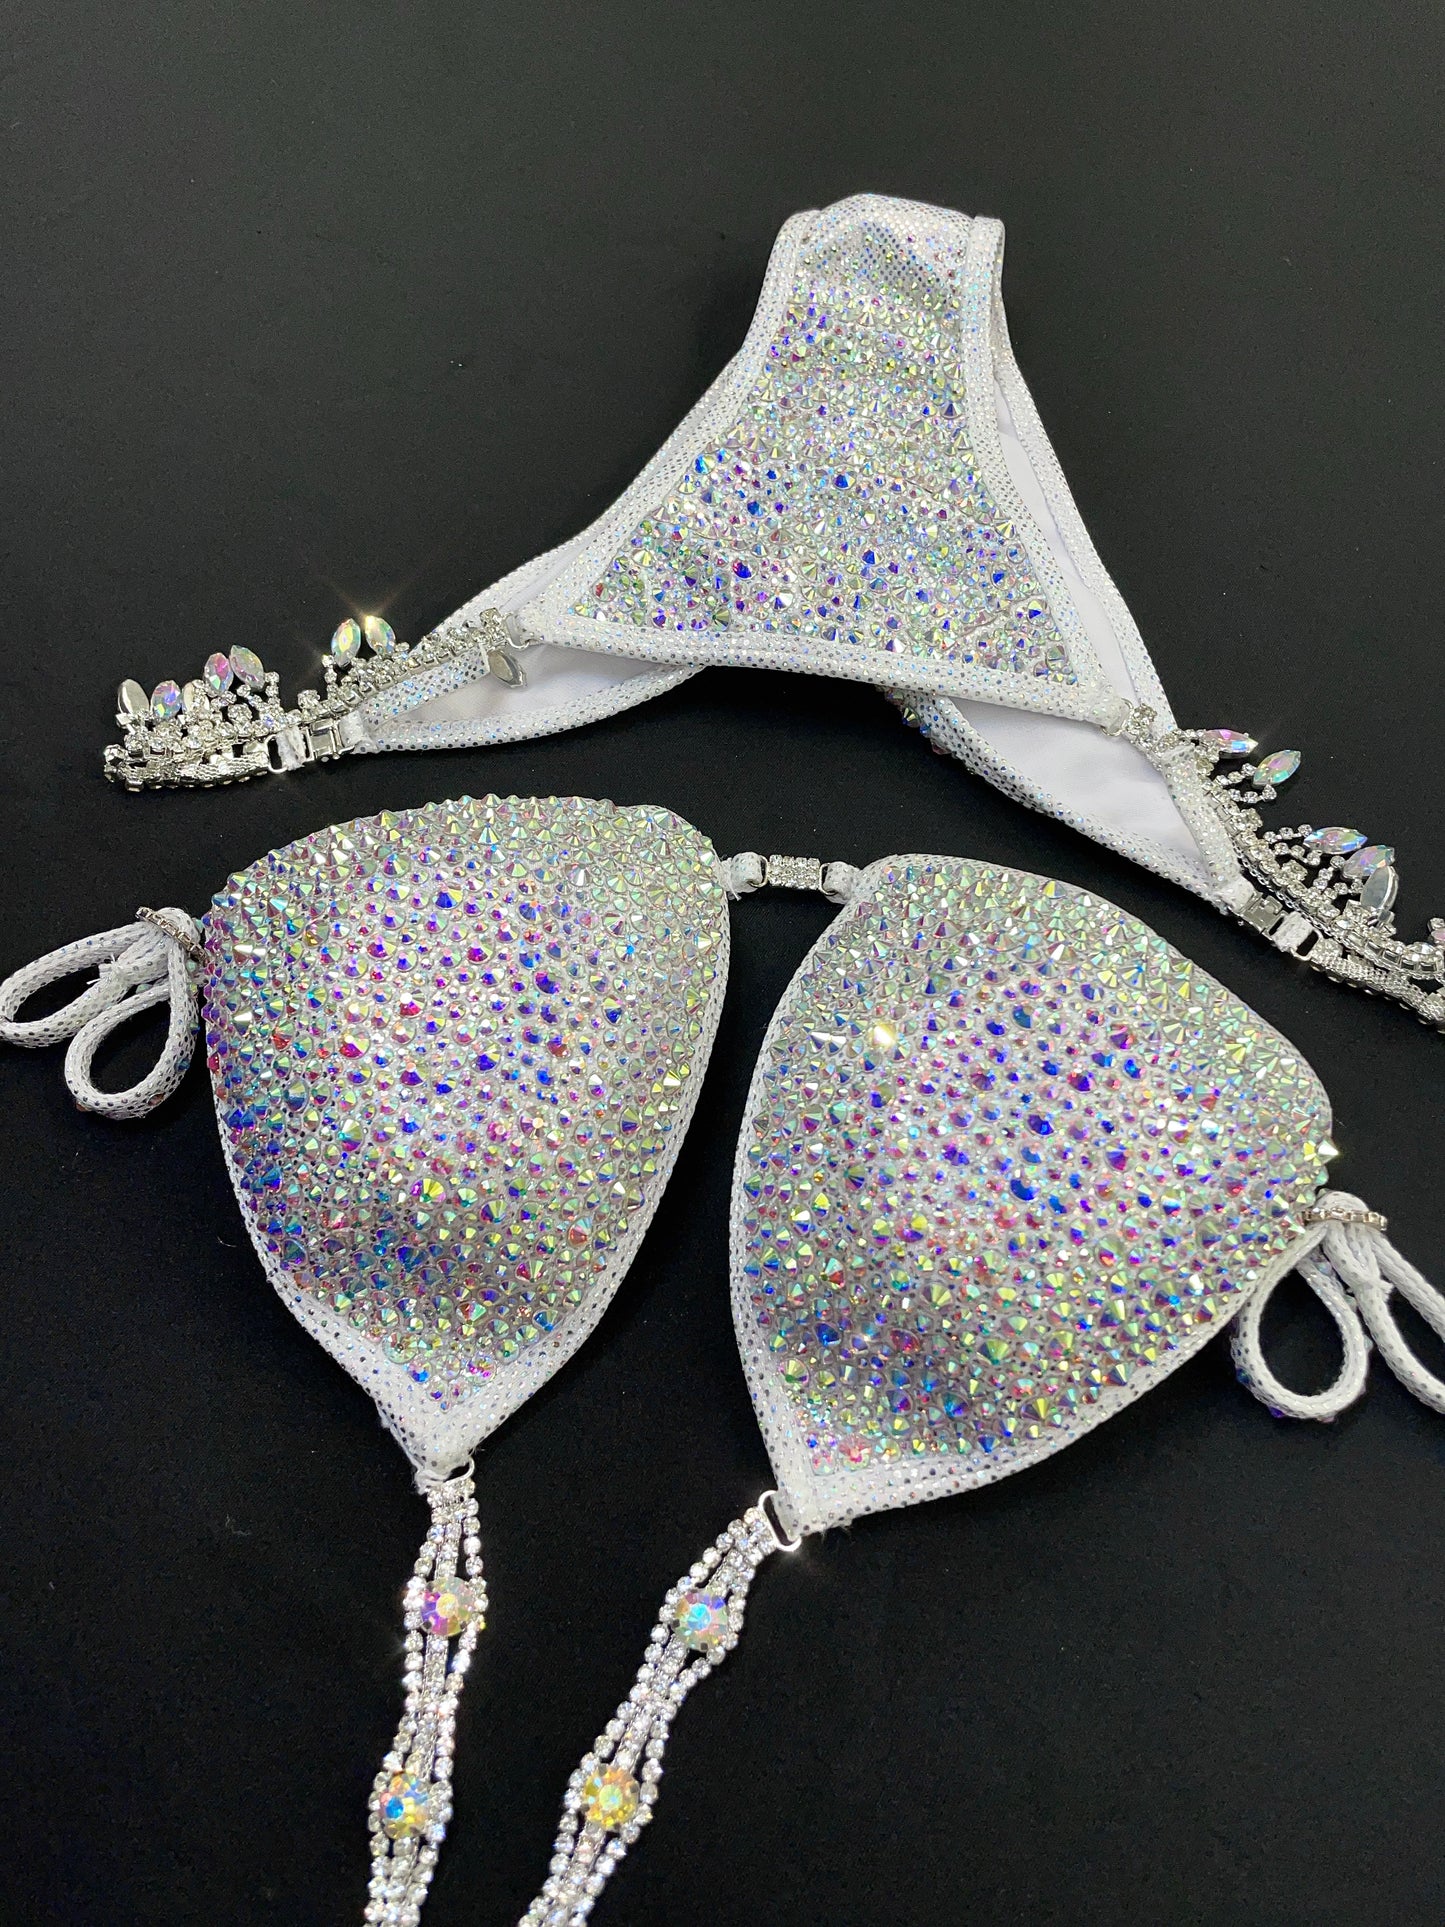 Silver foil fabric AB crystal Bikini (TN723)